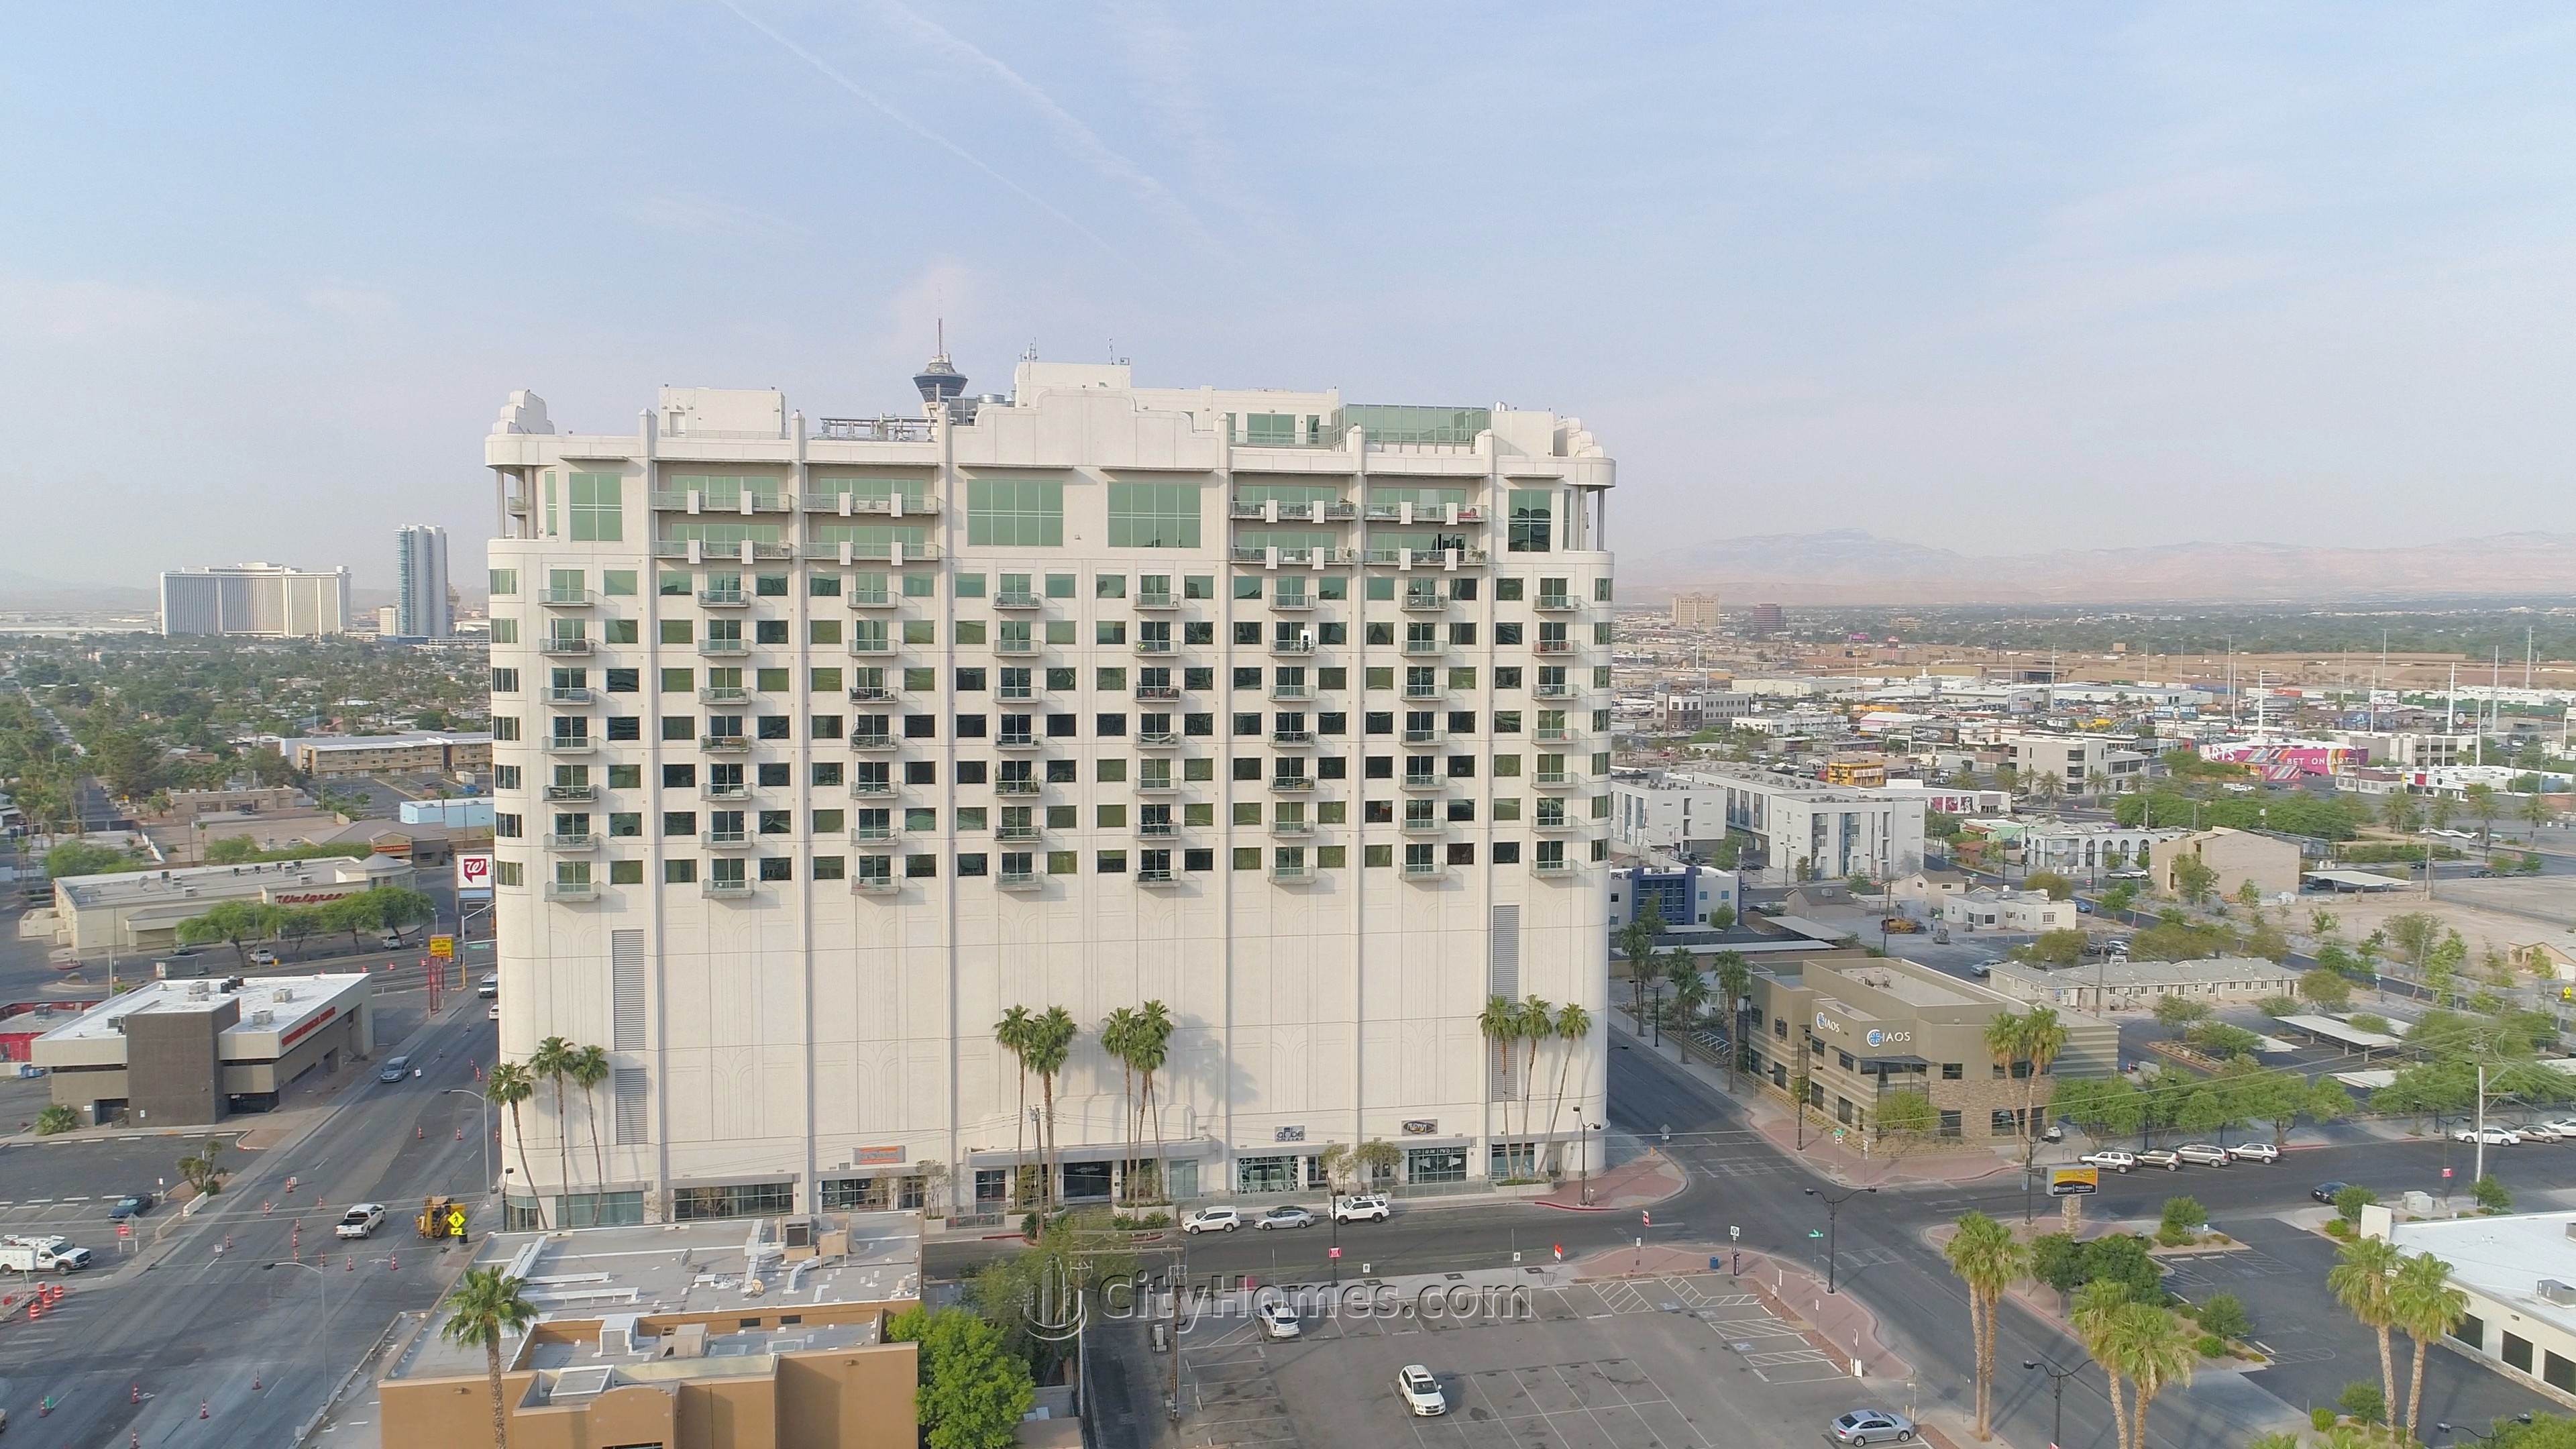 3. Soho Lofts xây dựng tại 900 S Las Vegas Blvd, Las Vegas, NV 89101